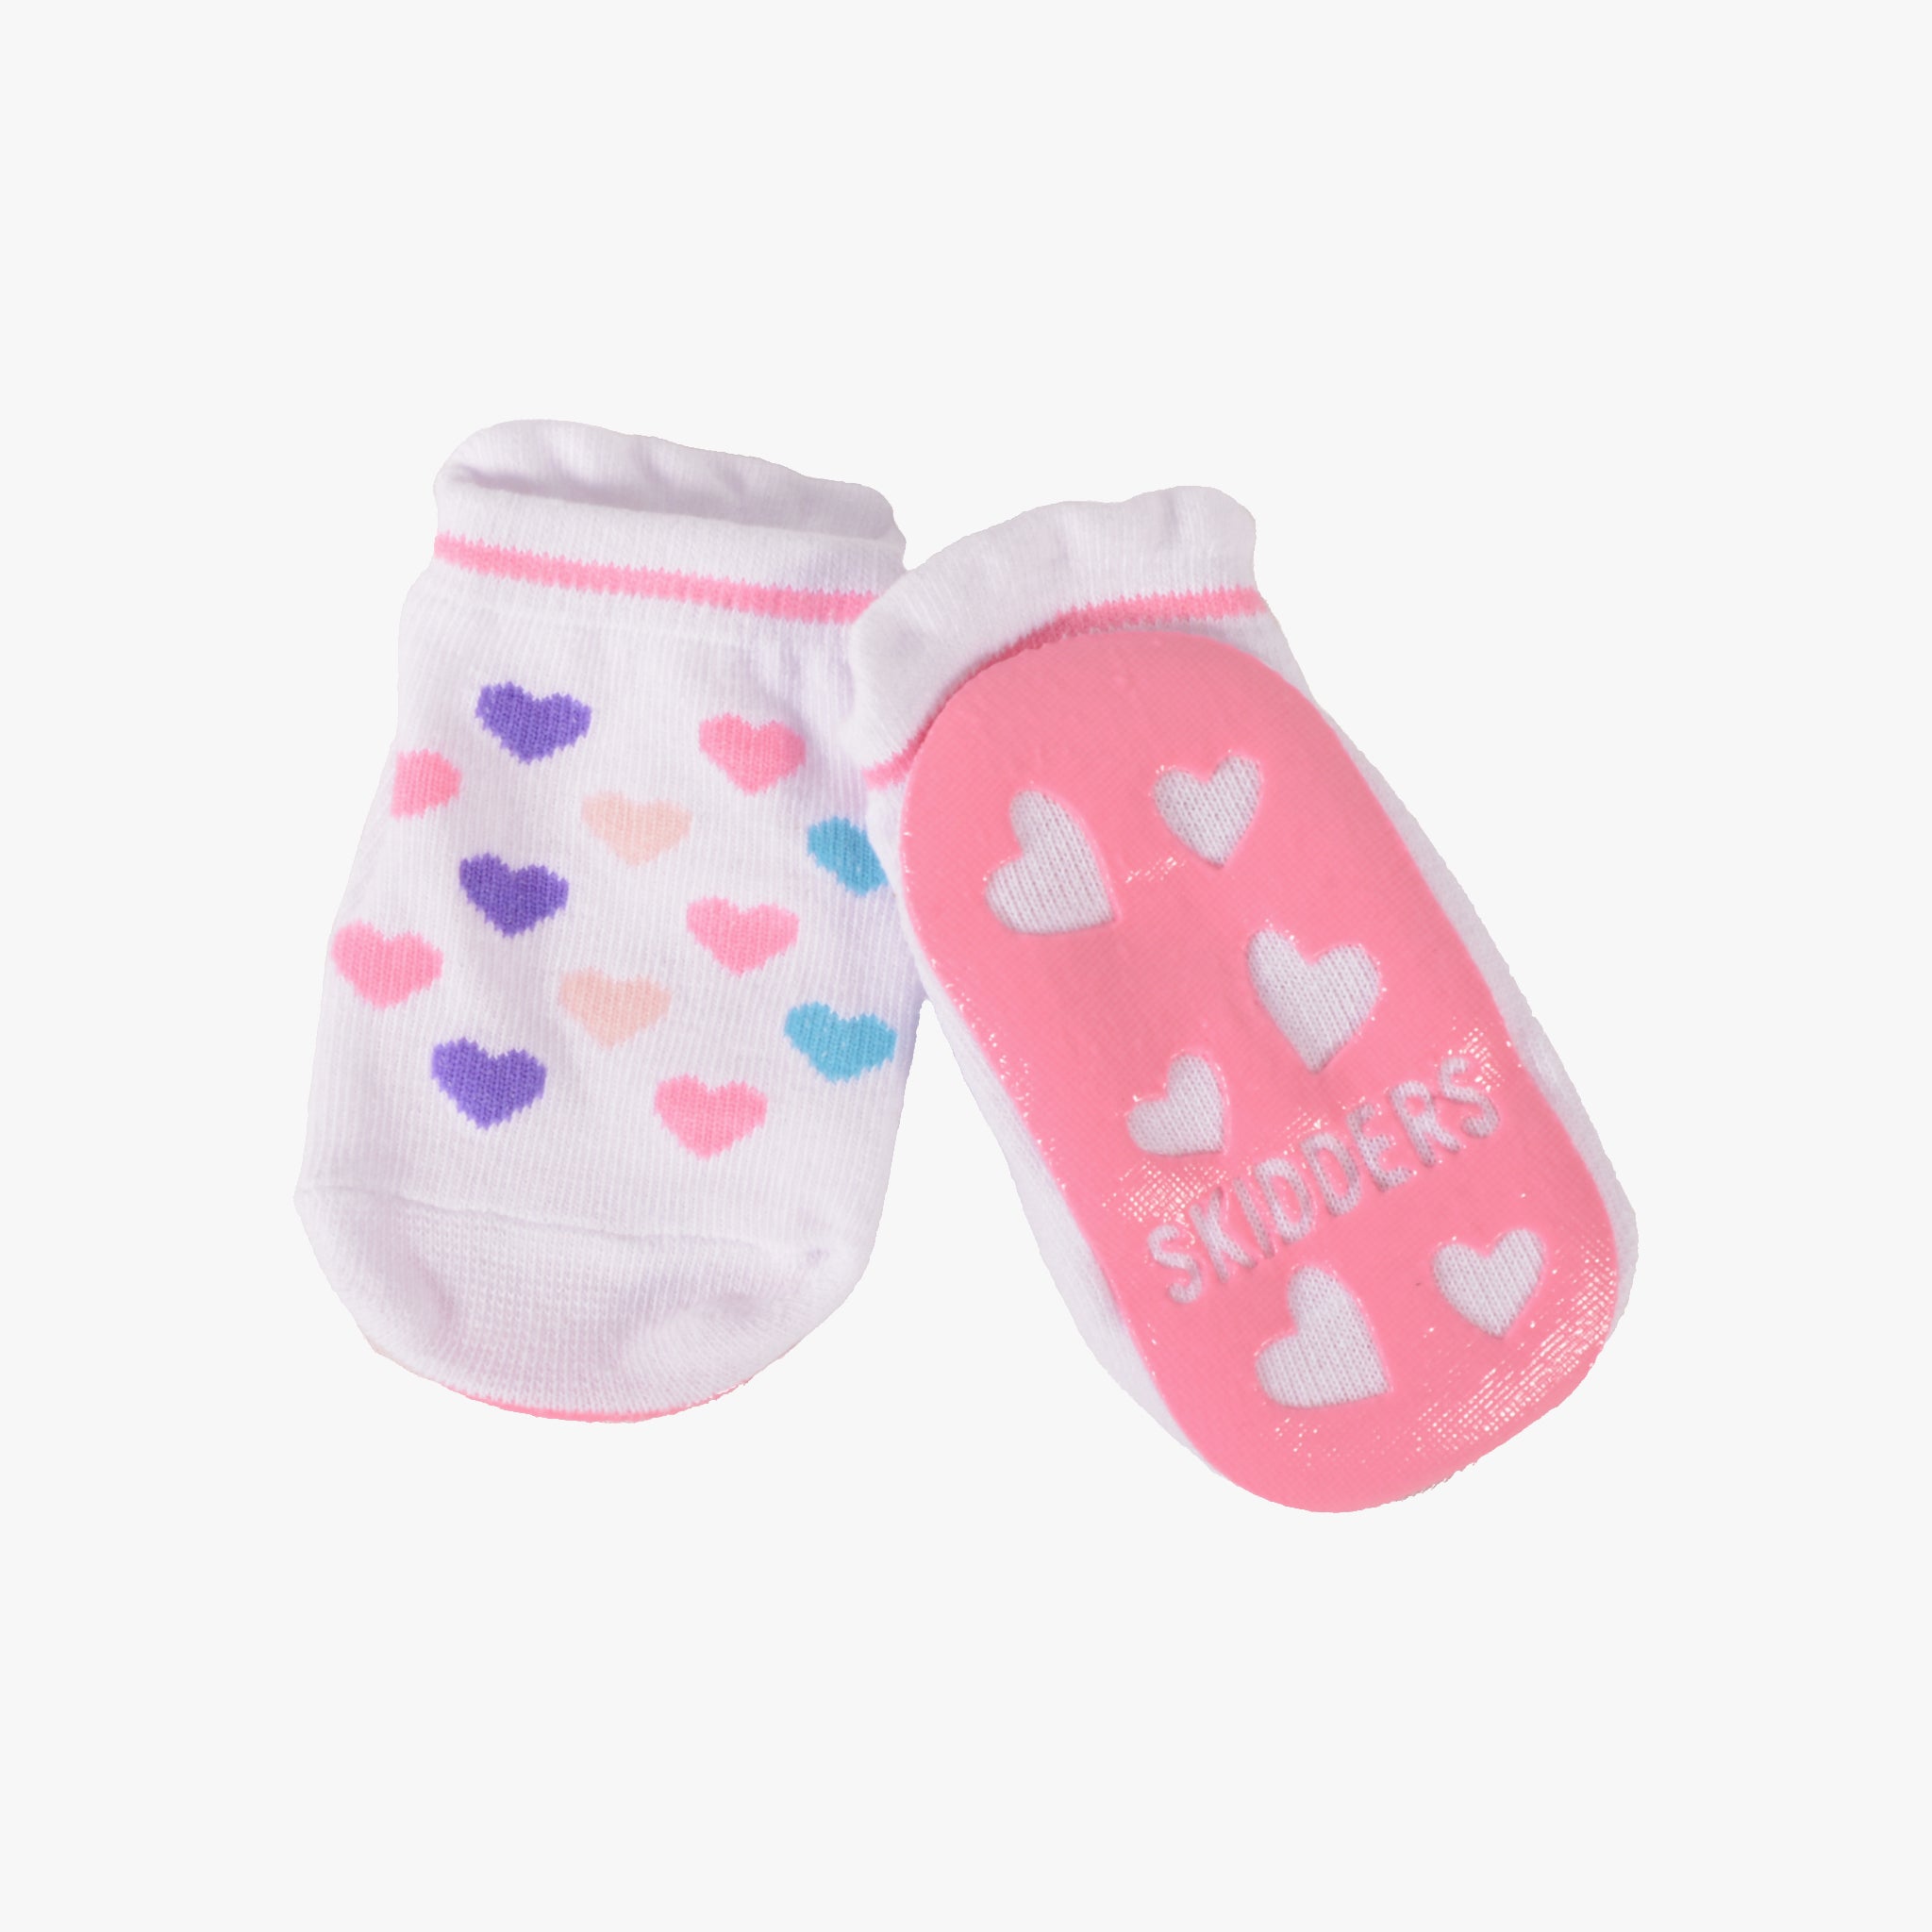 Gripper Socks In Women's Socks for sale